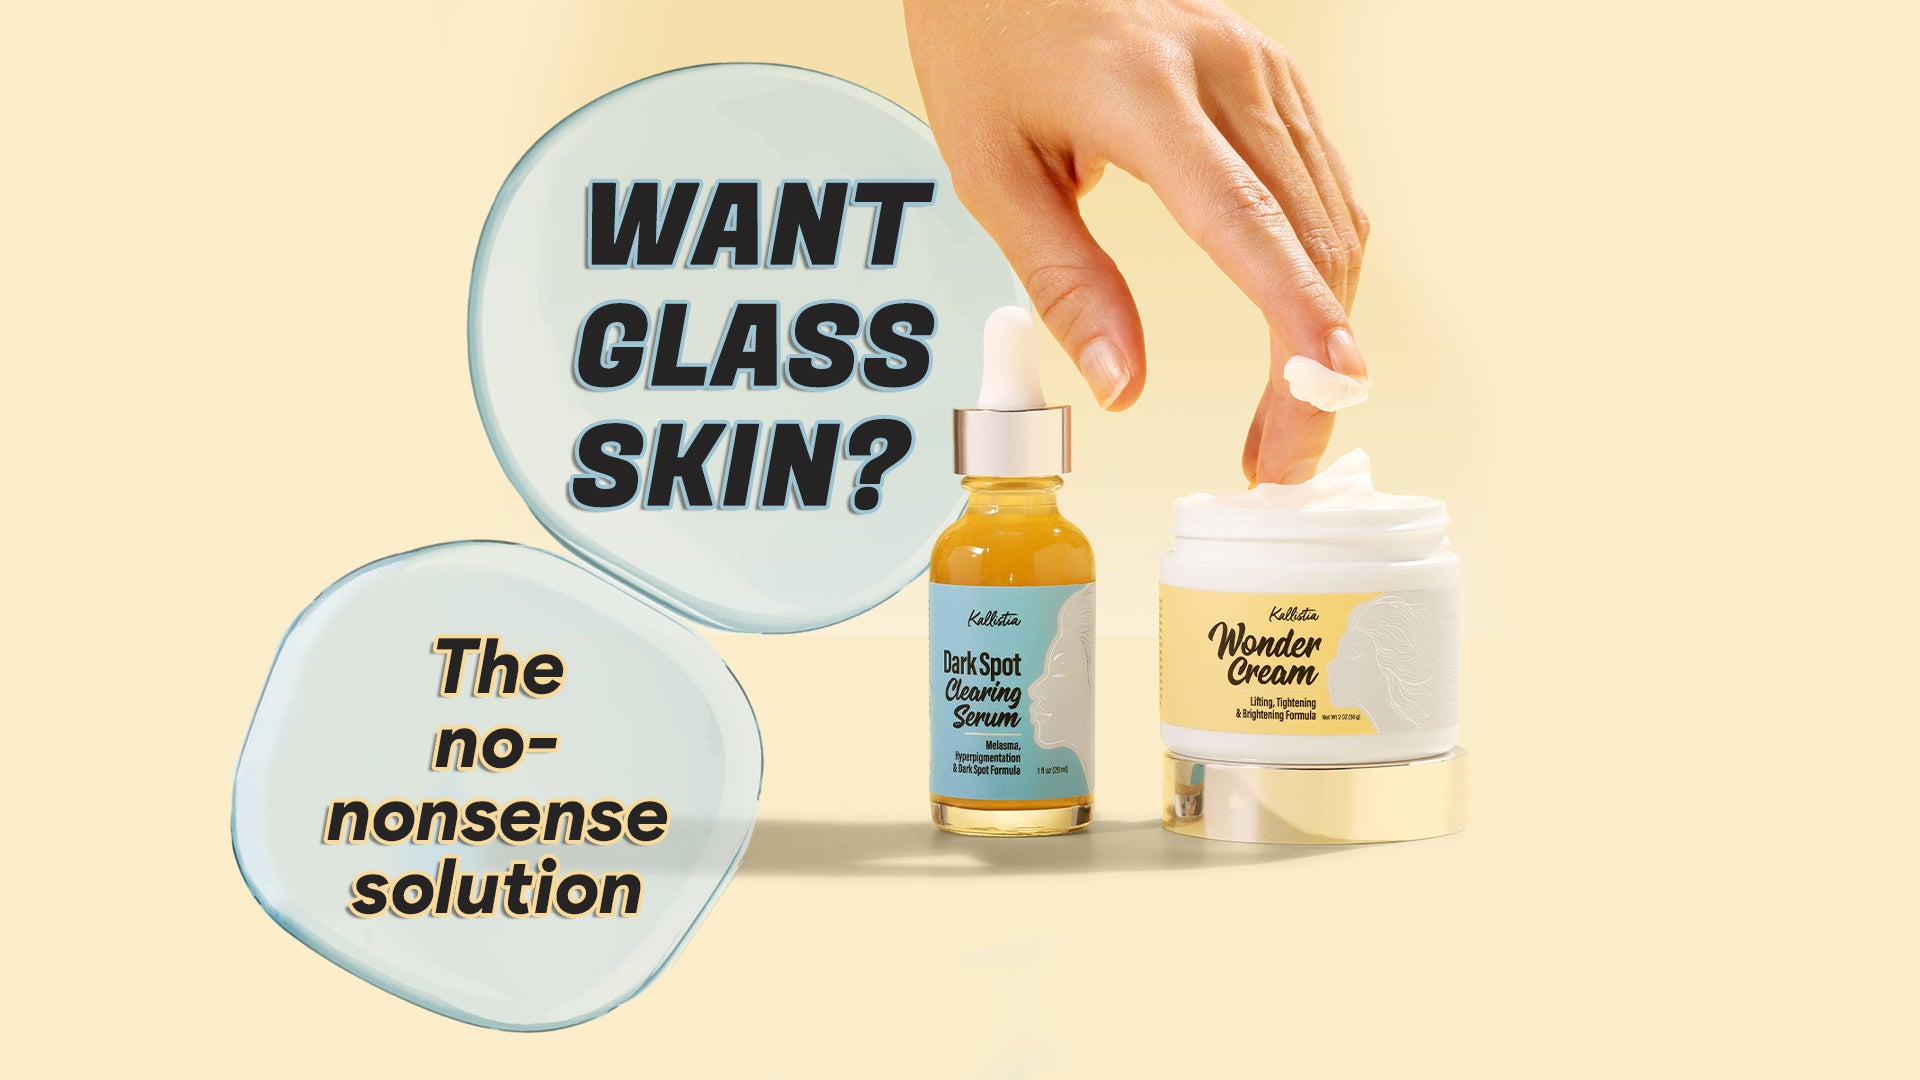 Want glass skin?